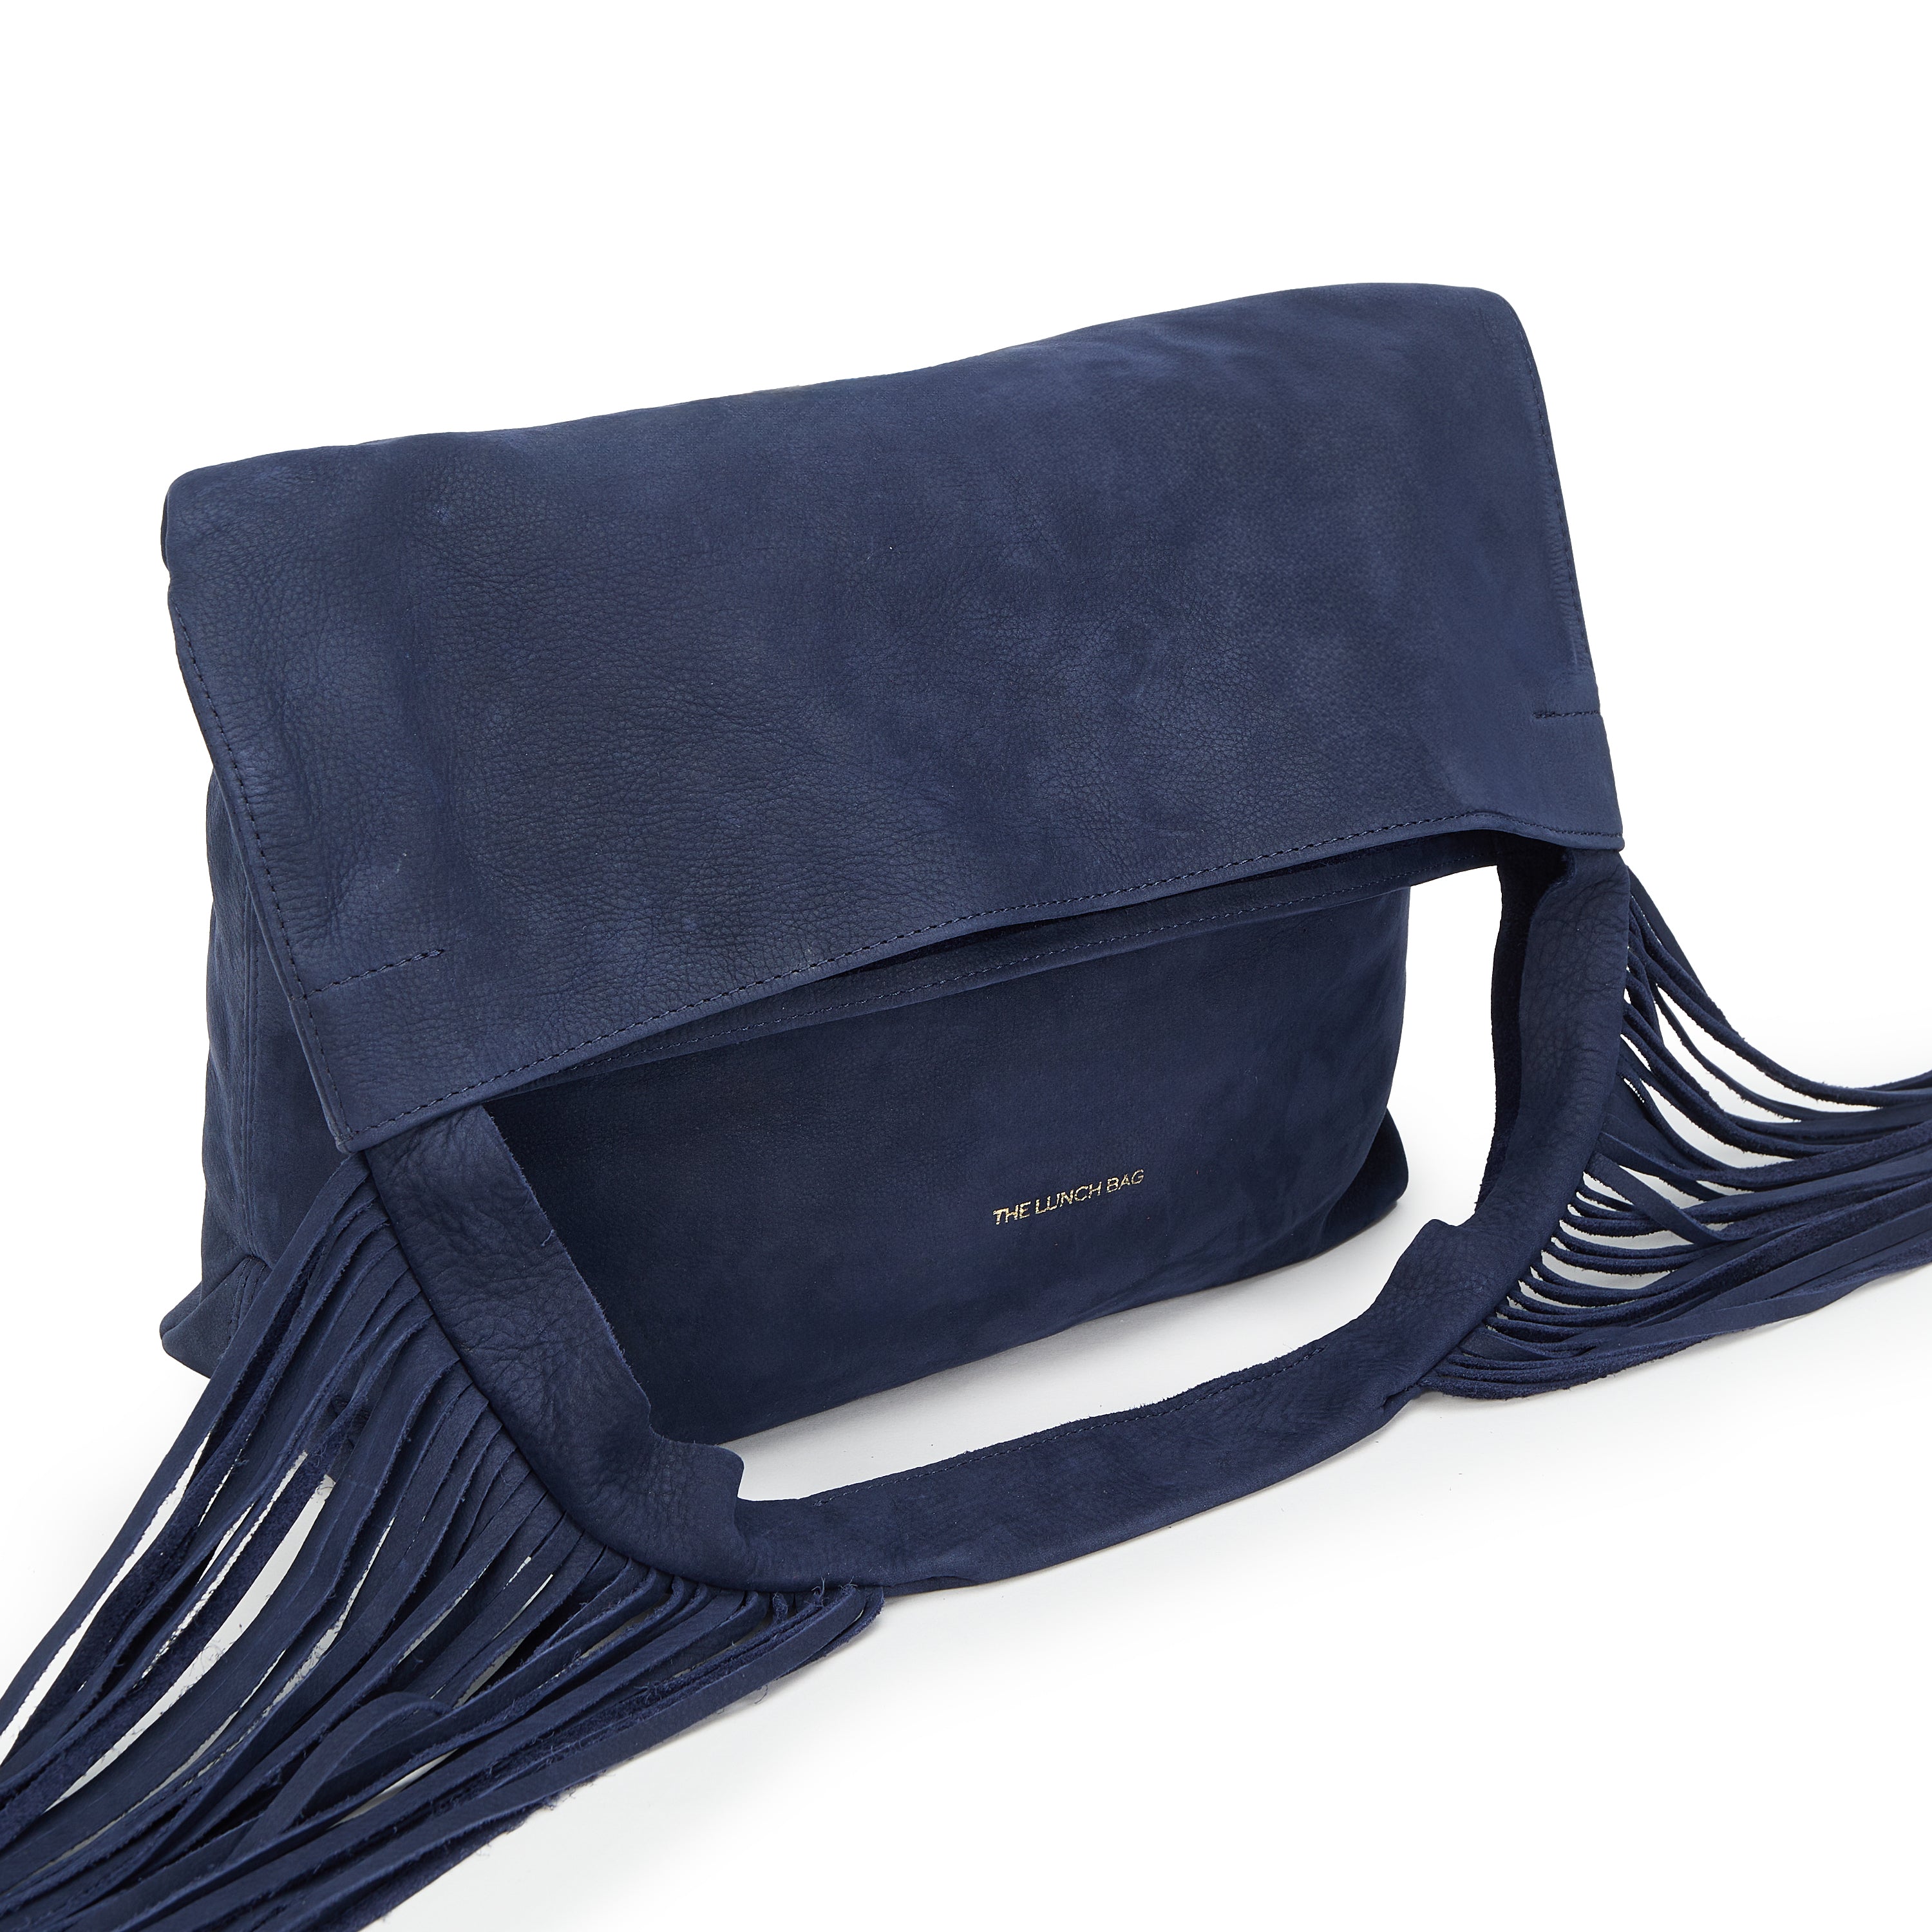 Boho bag with fringes blue